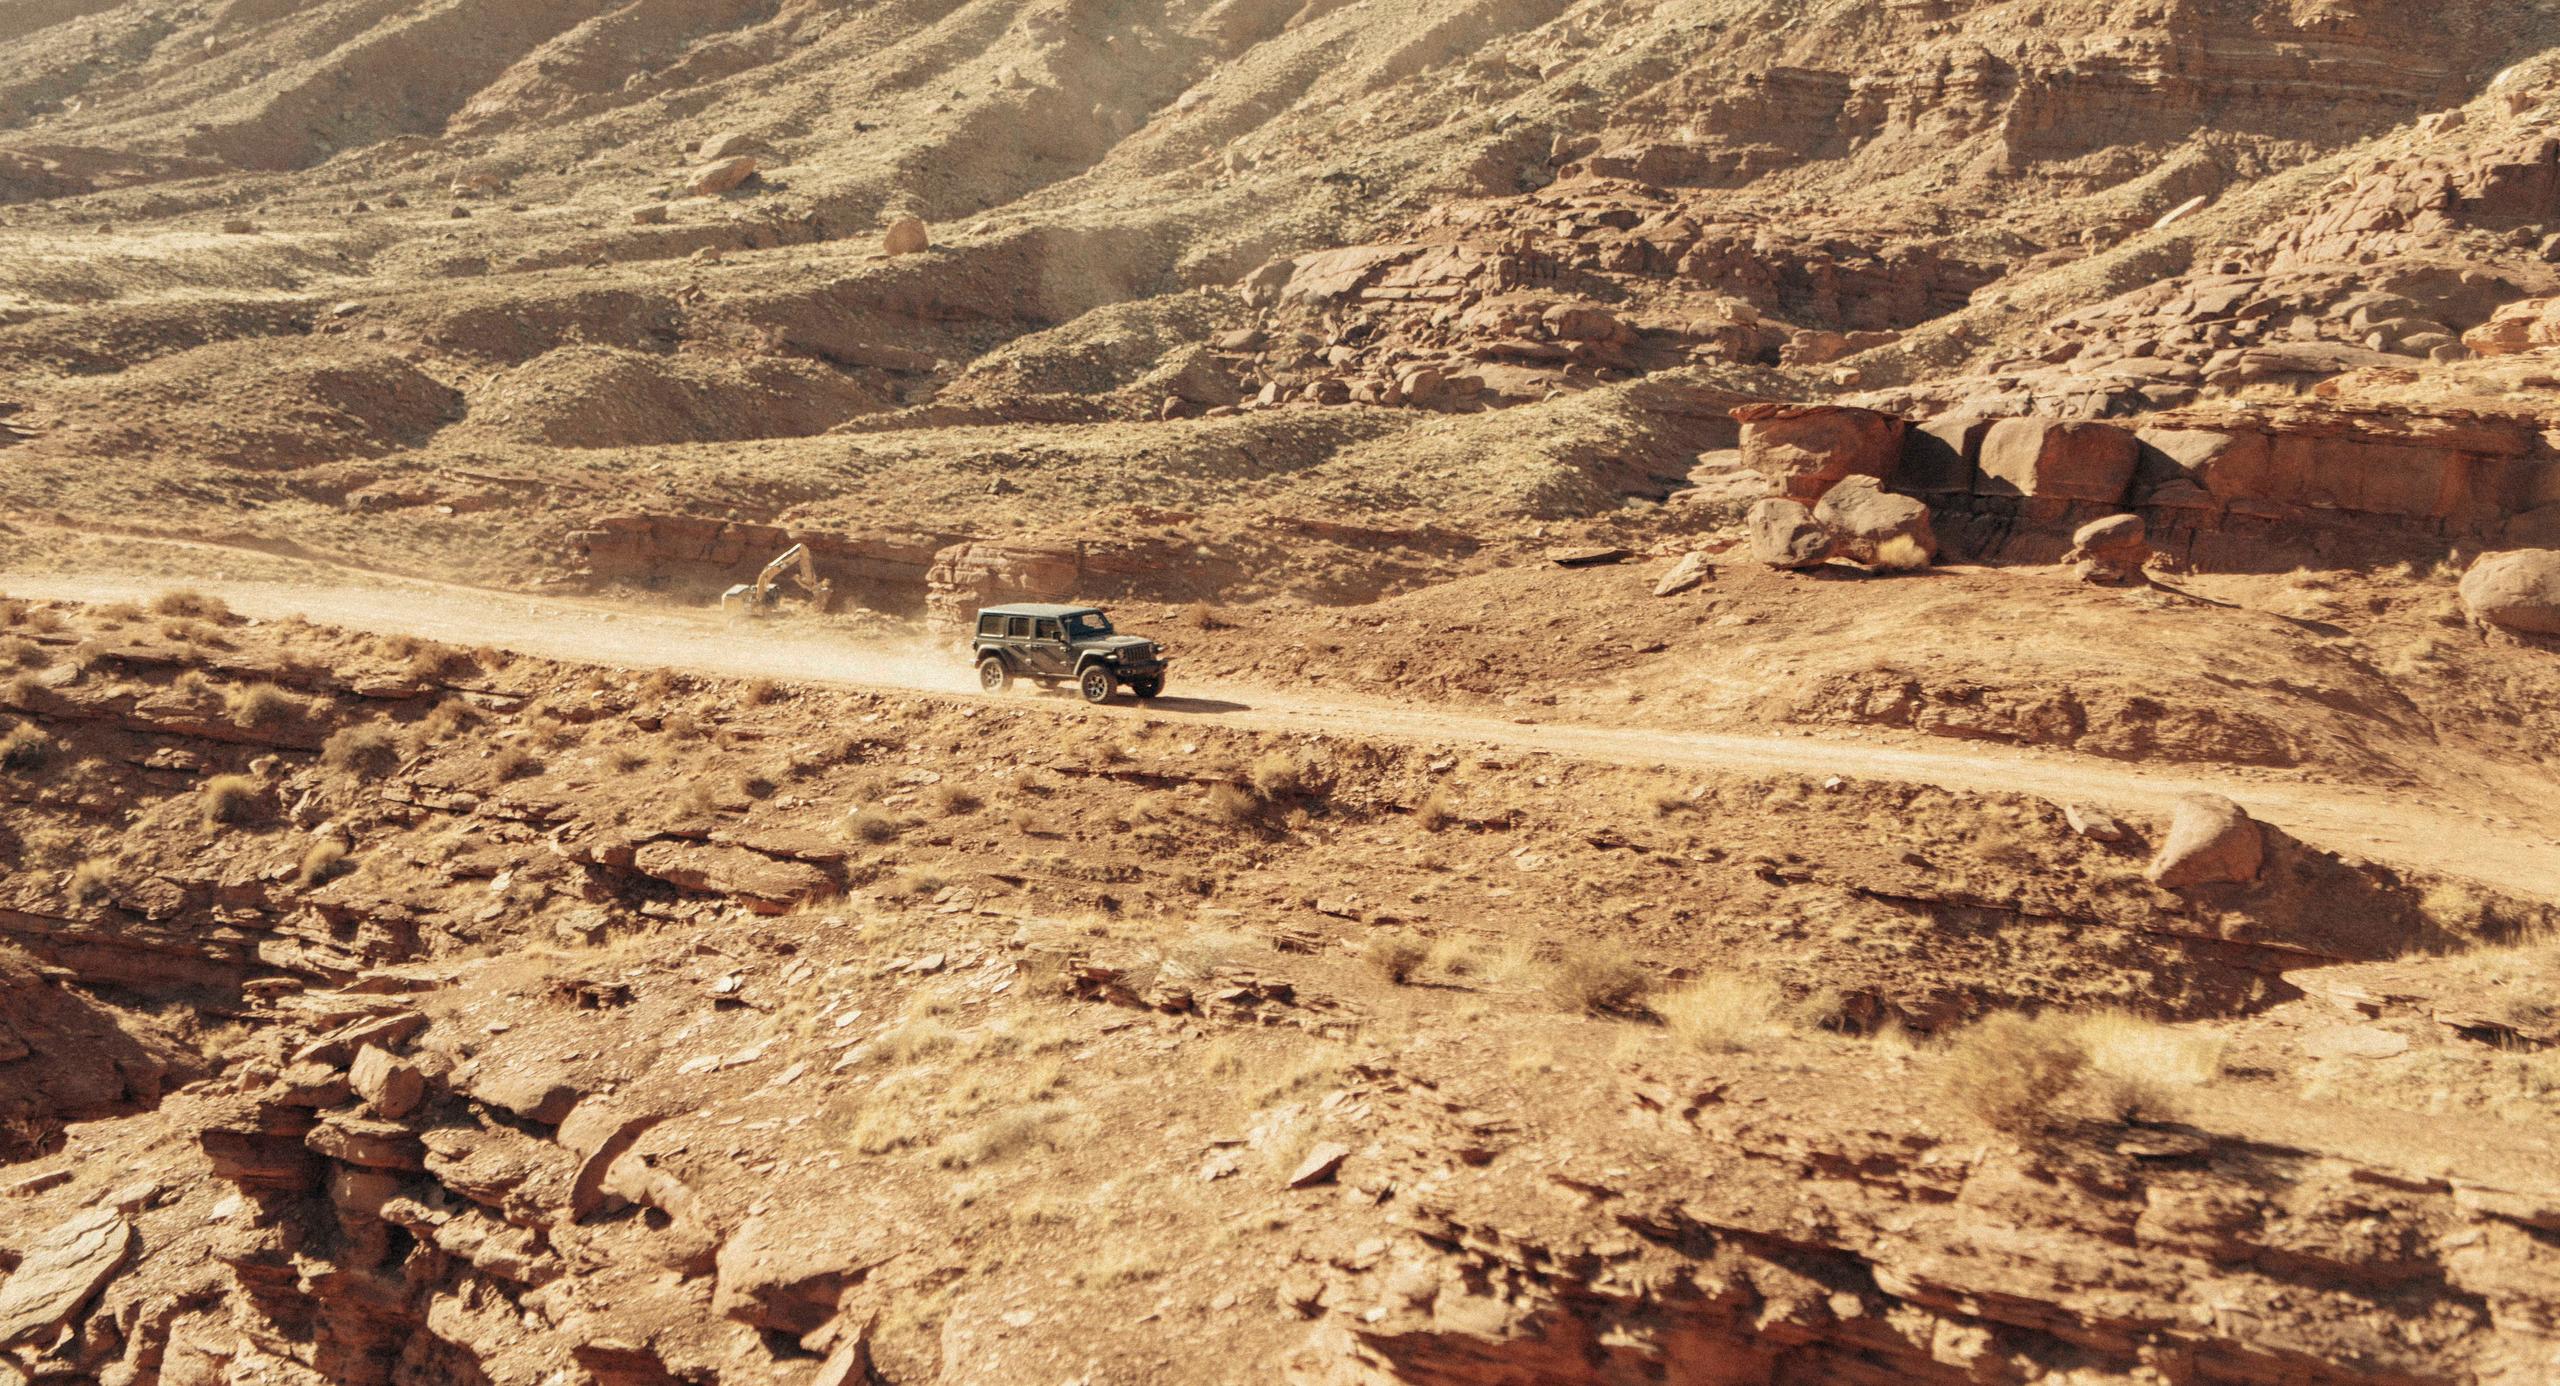 A car driving through canyon